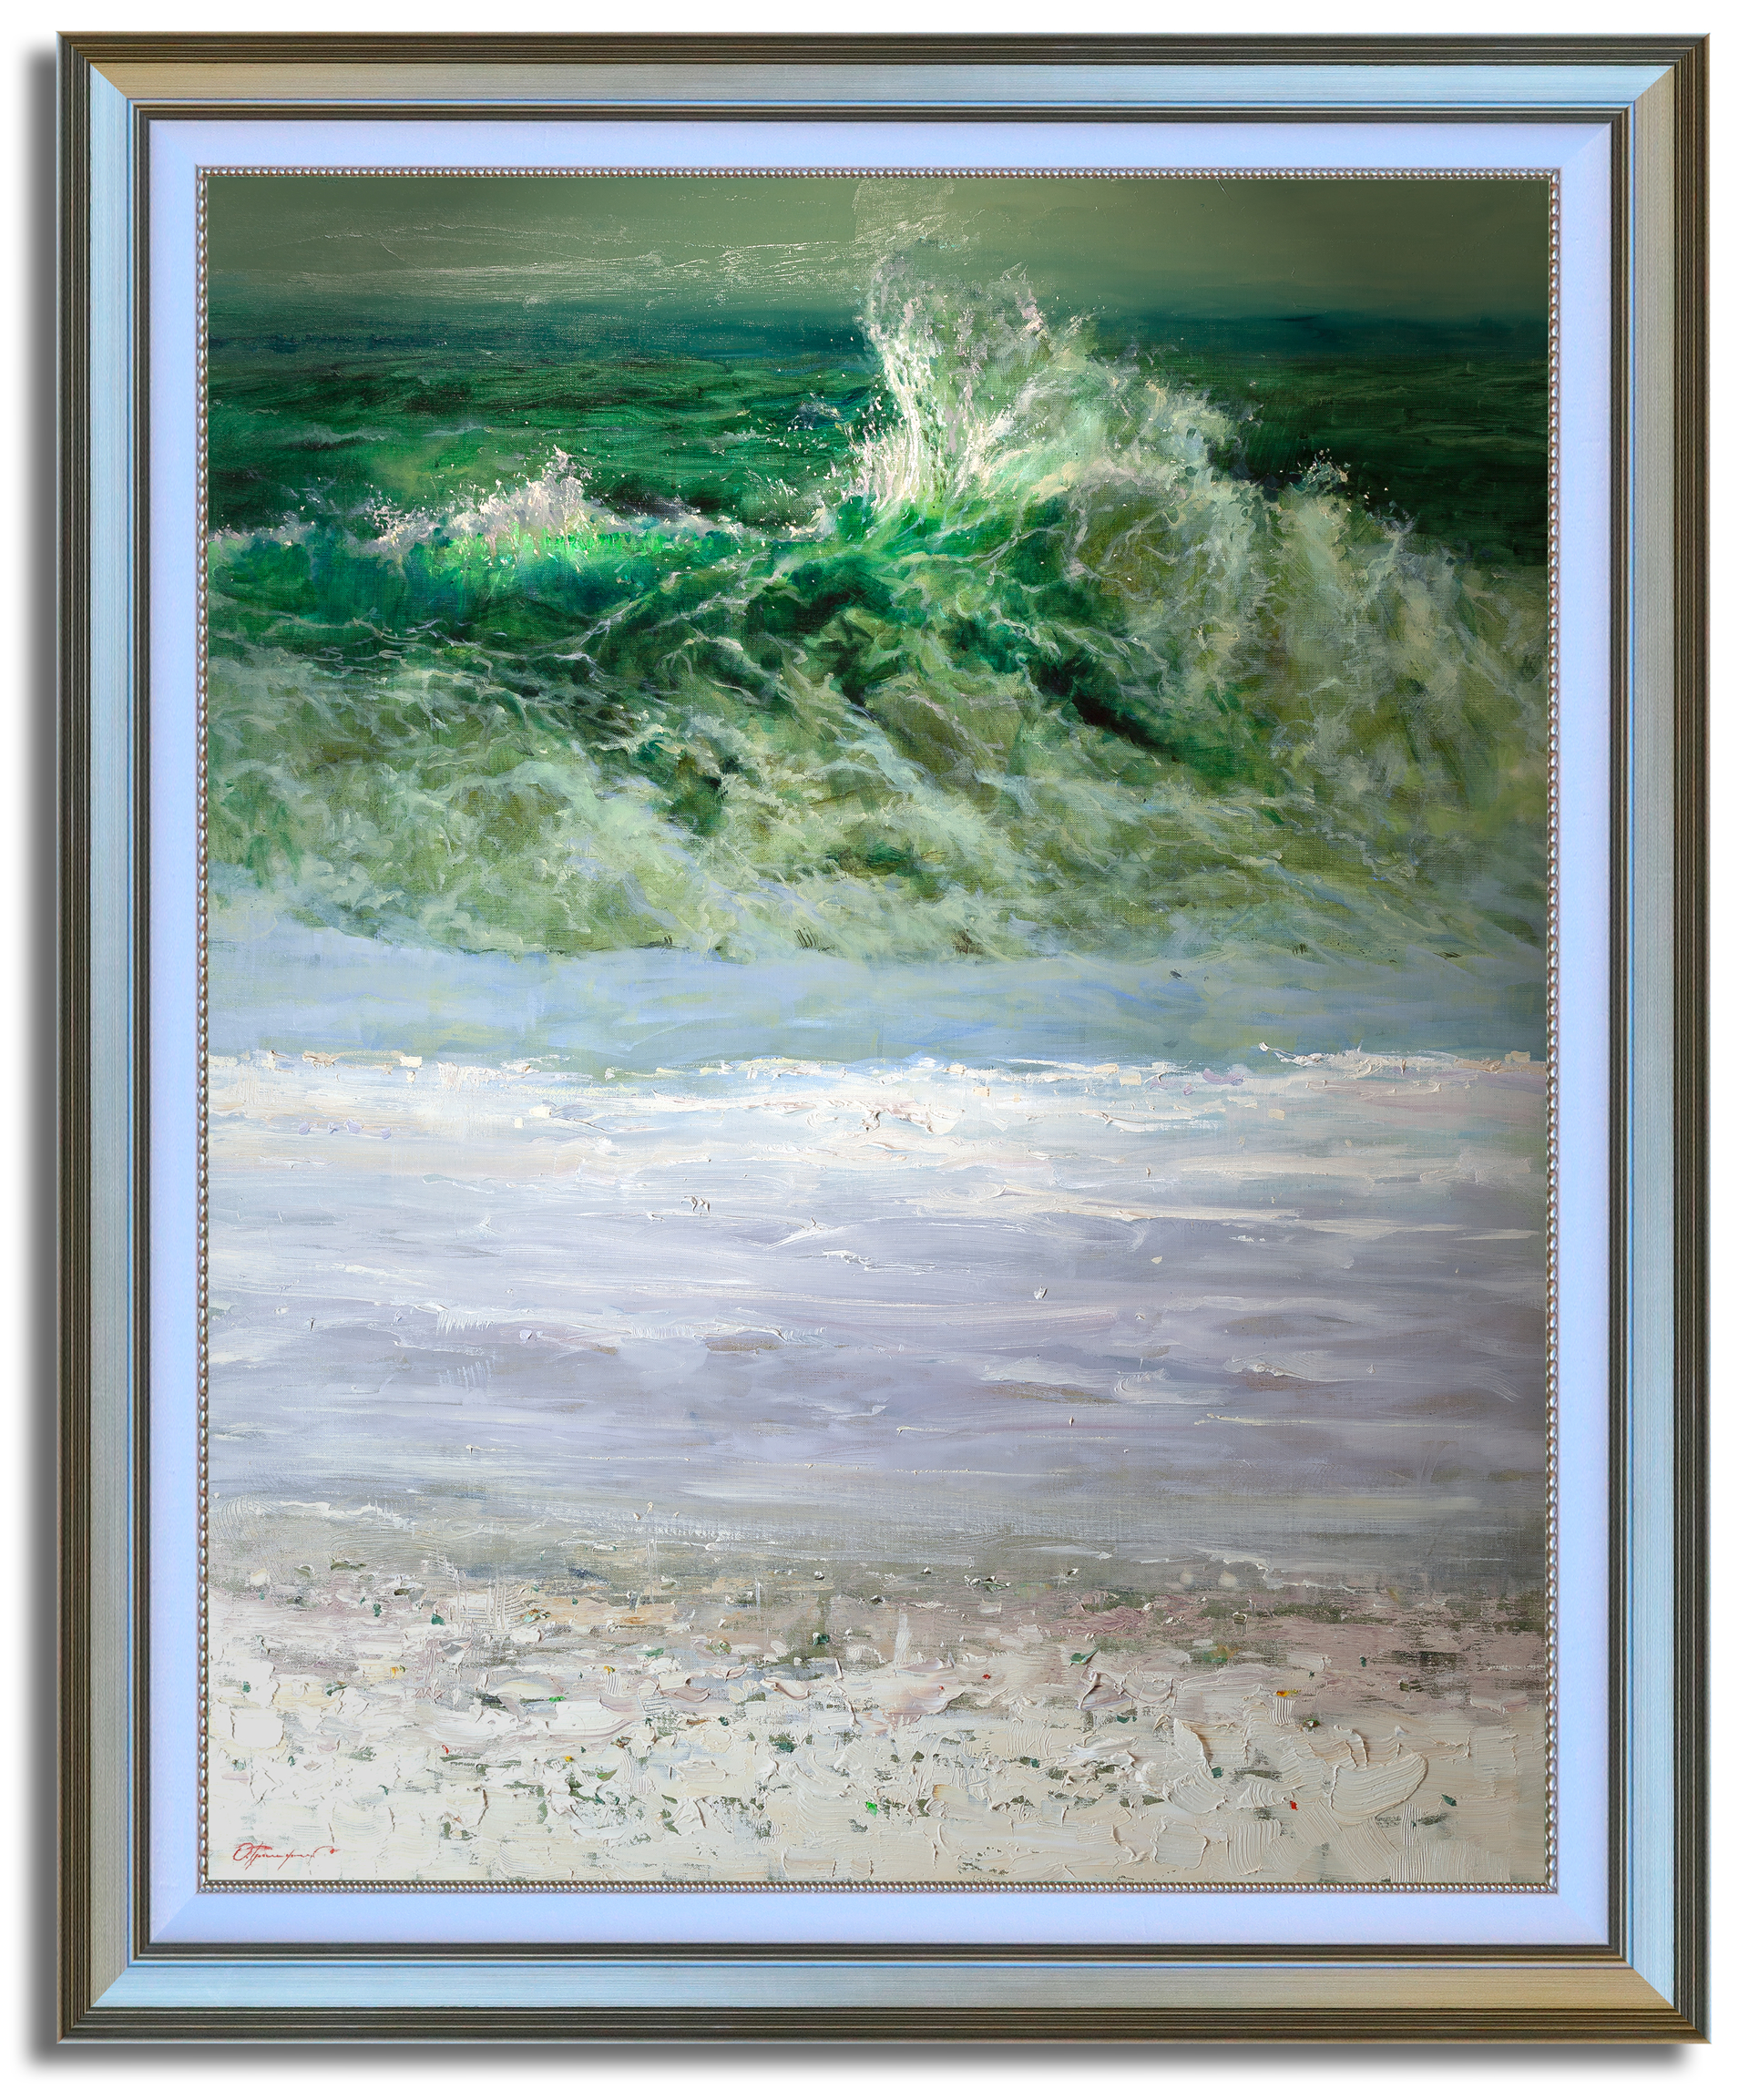 "Ocean Wave" by Oleg Trofimov